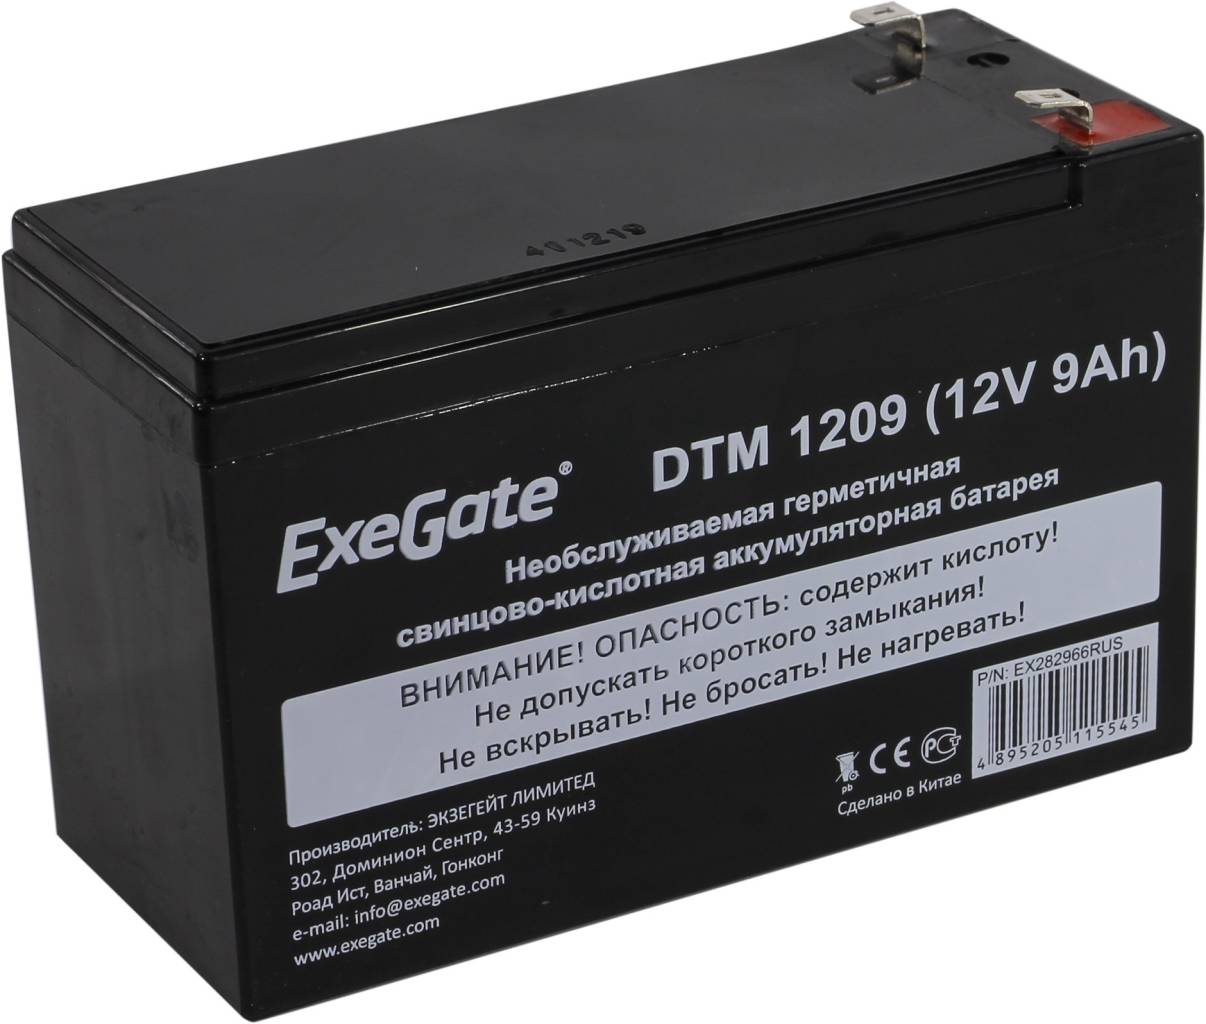   12V    9.0Ah Exegate DTM 1209  UPS [EX282966RUS]